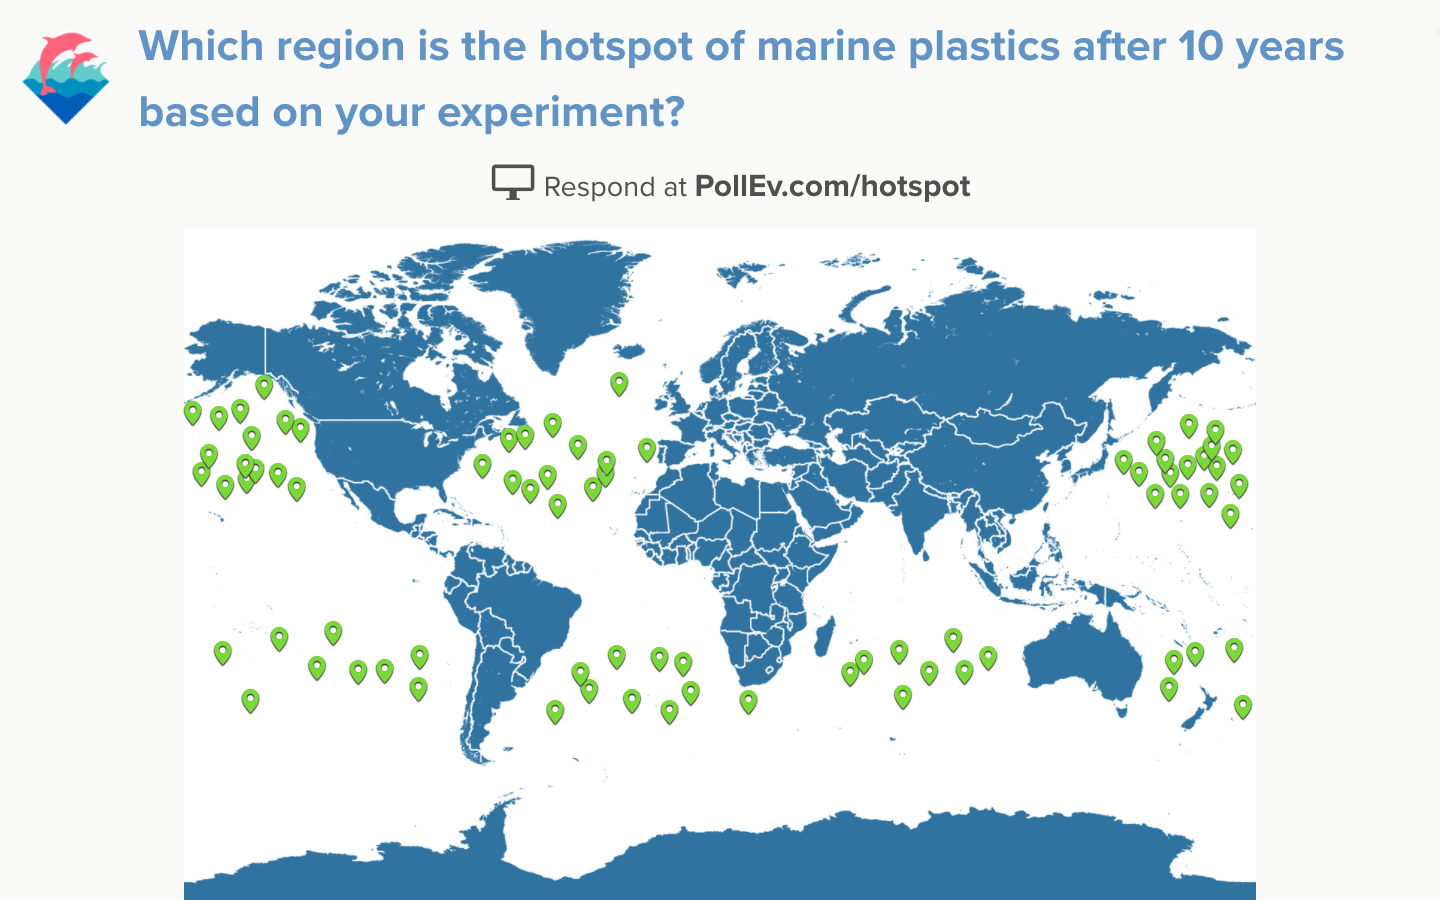 interactive-image-ocean-trash